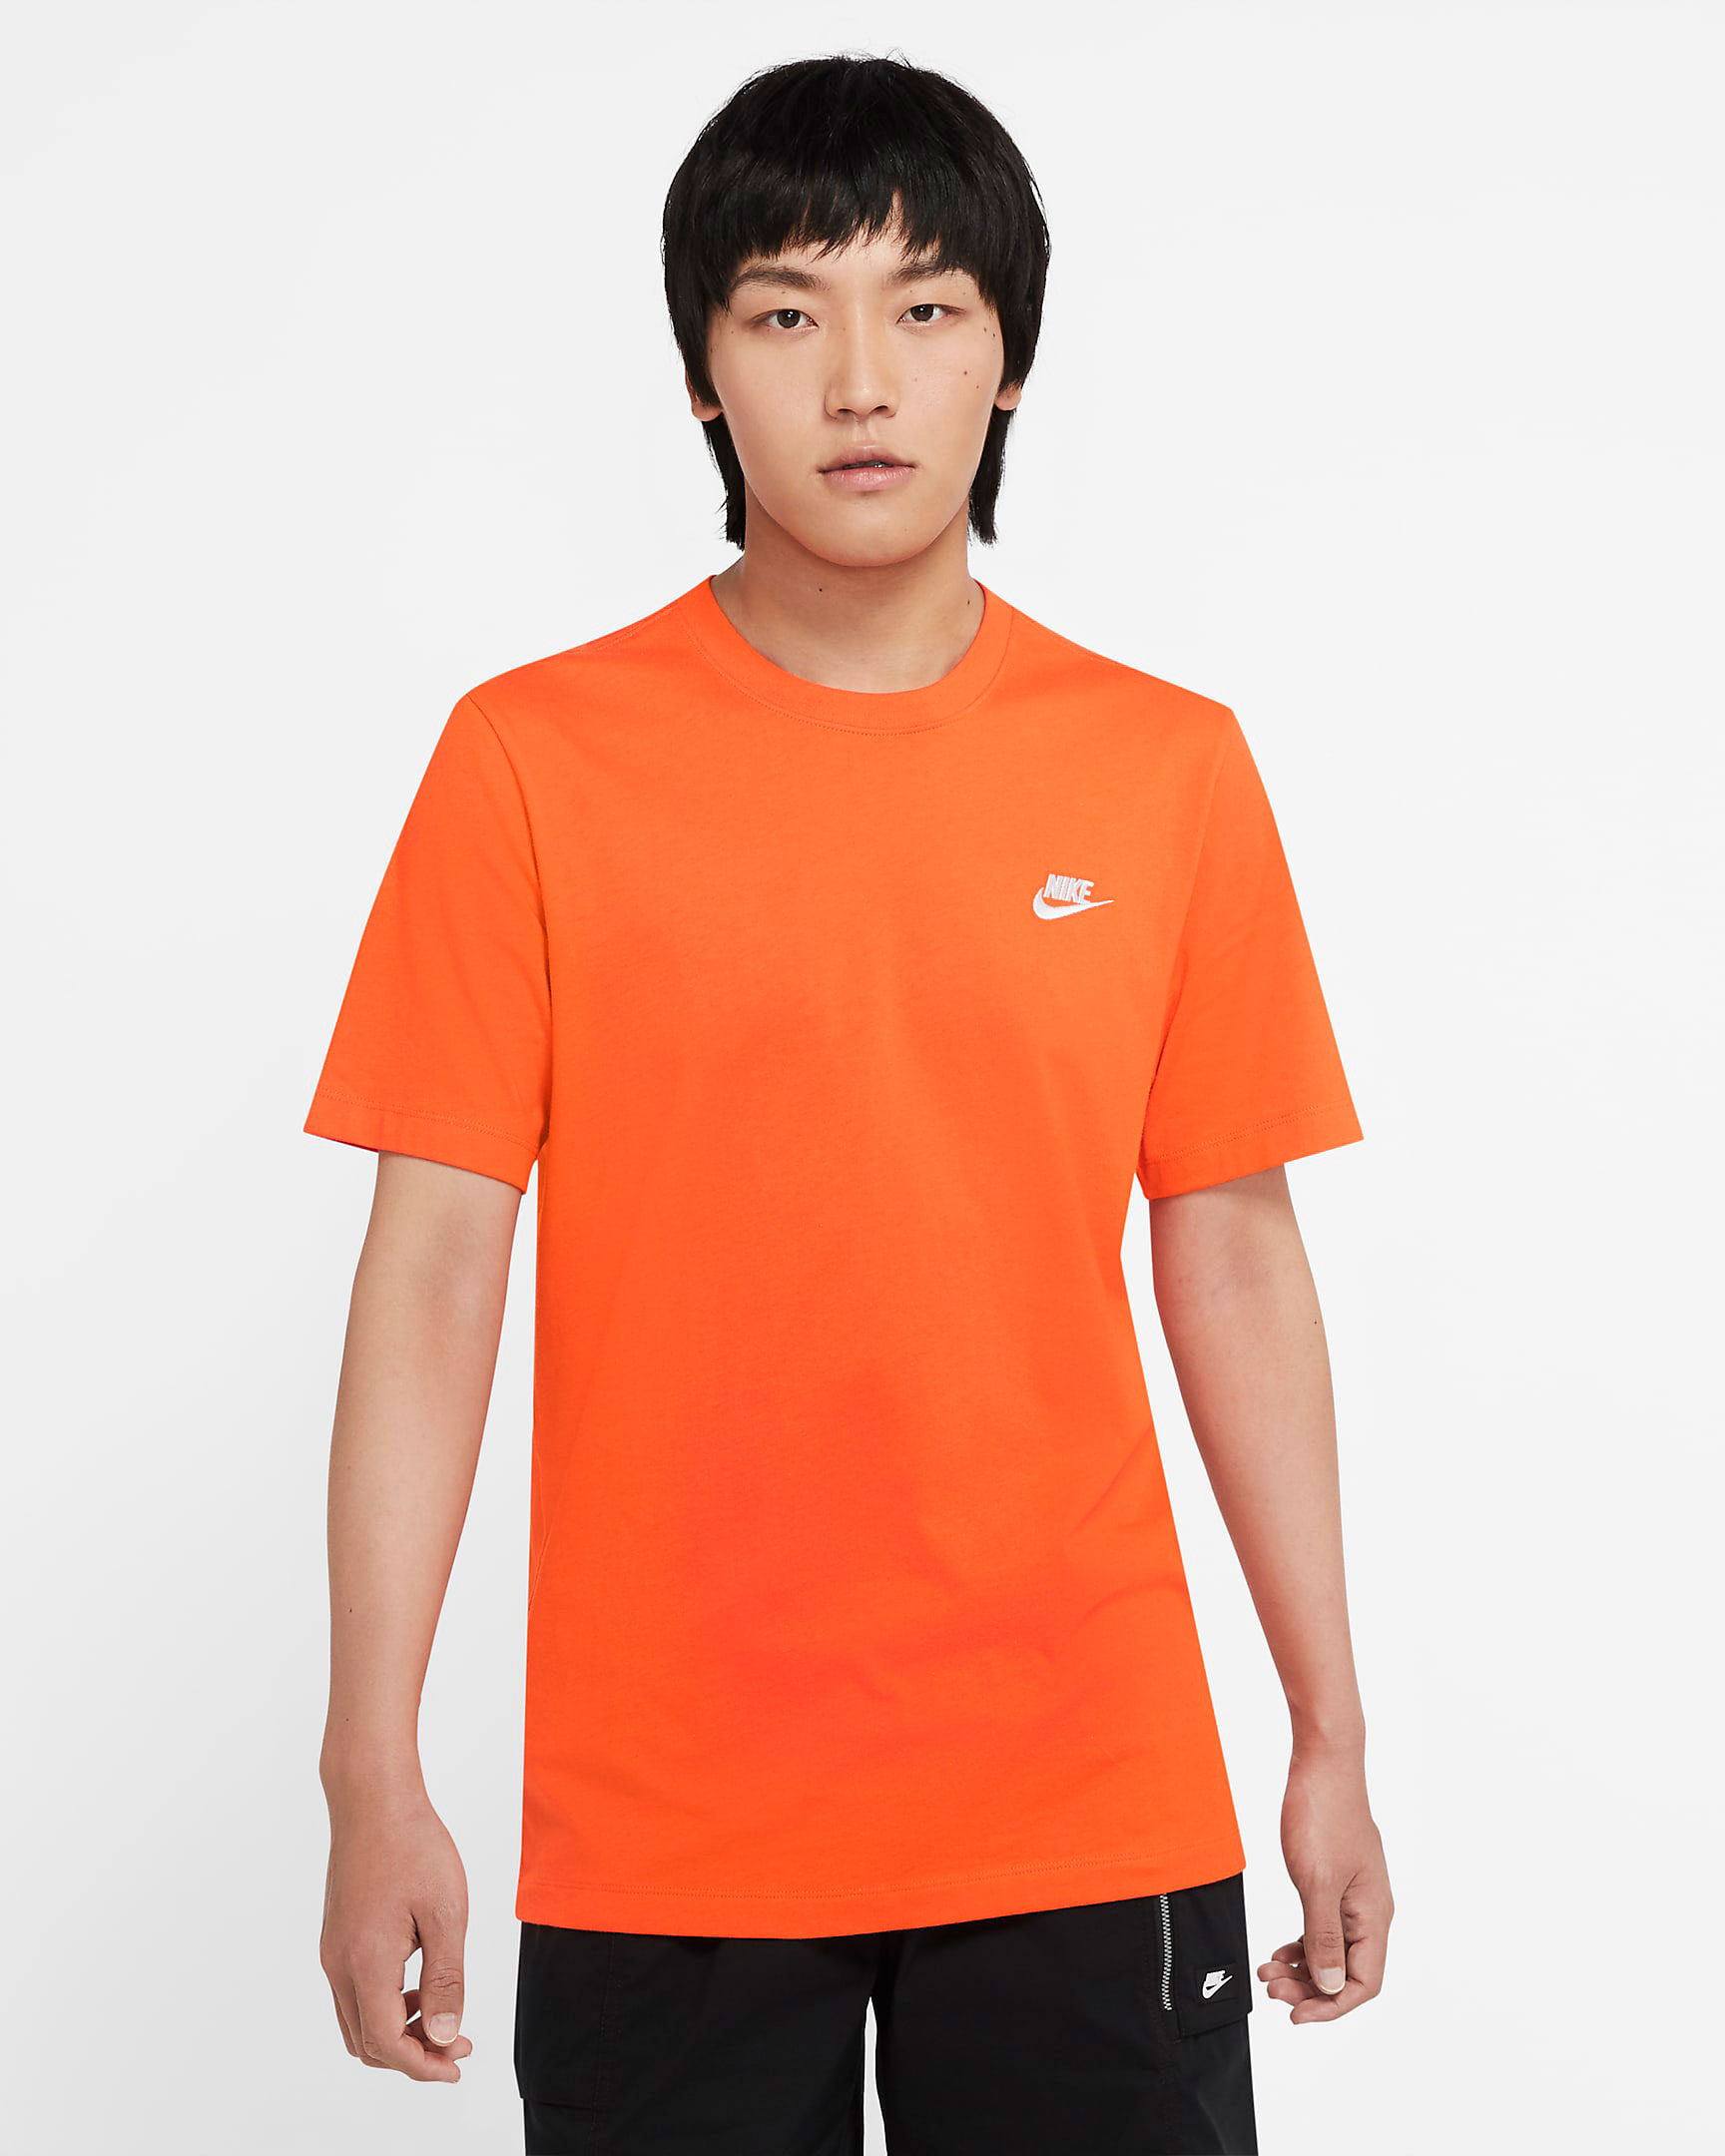 nike-futura-orange-shirt